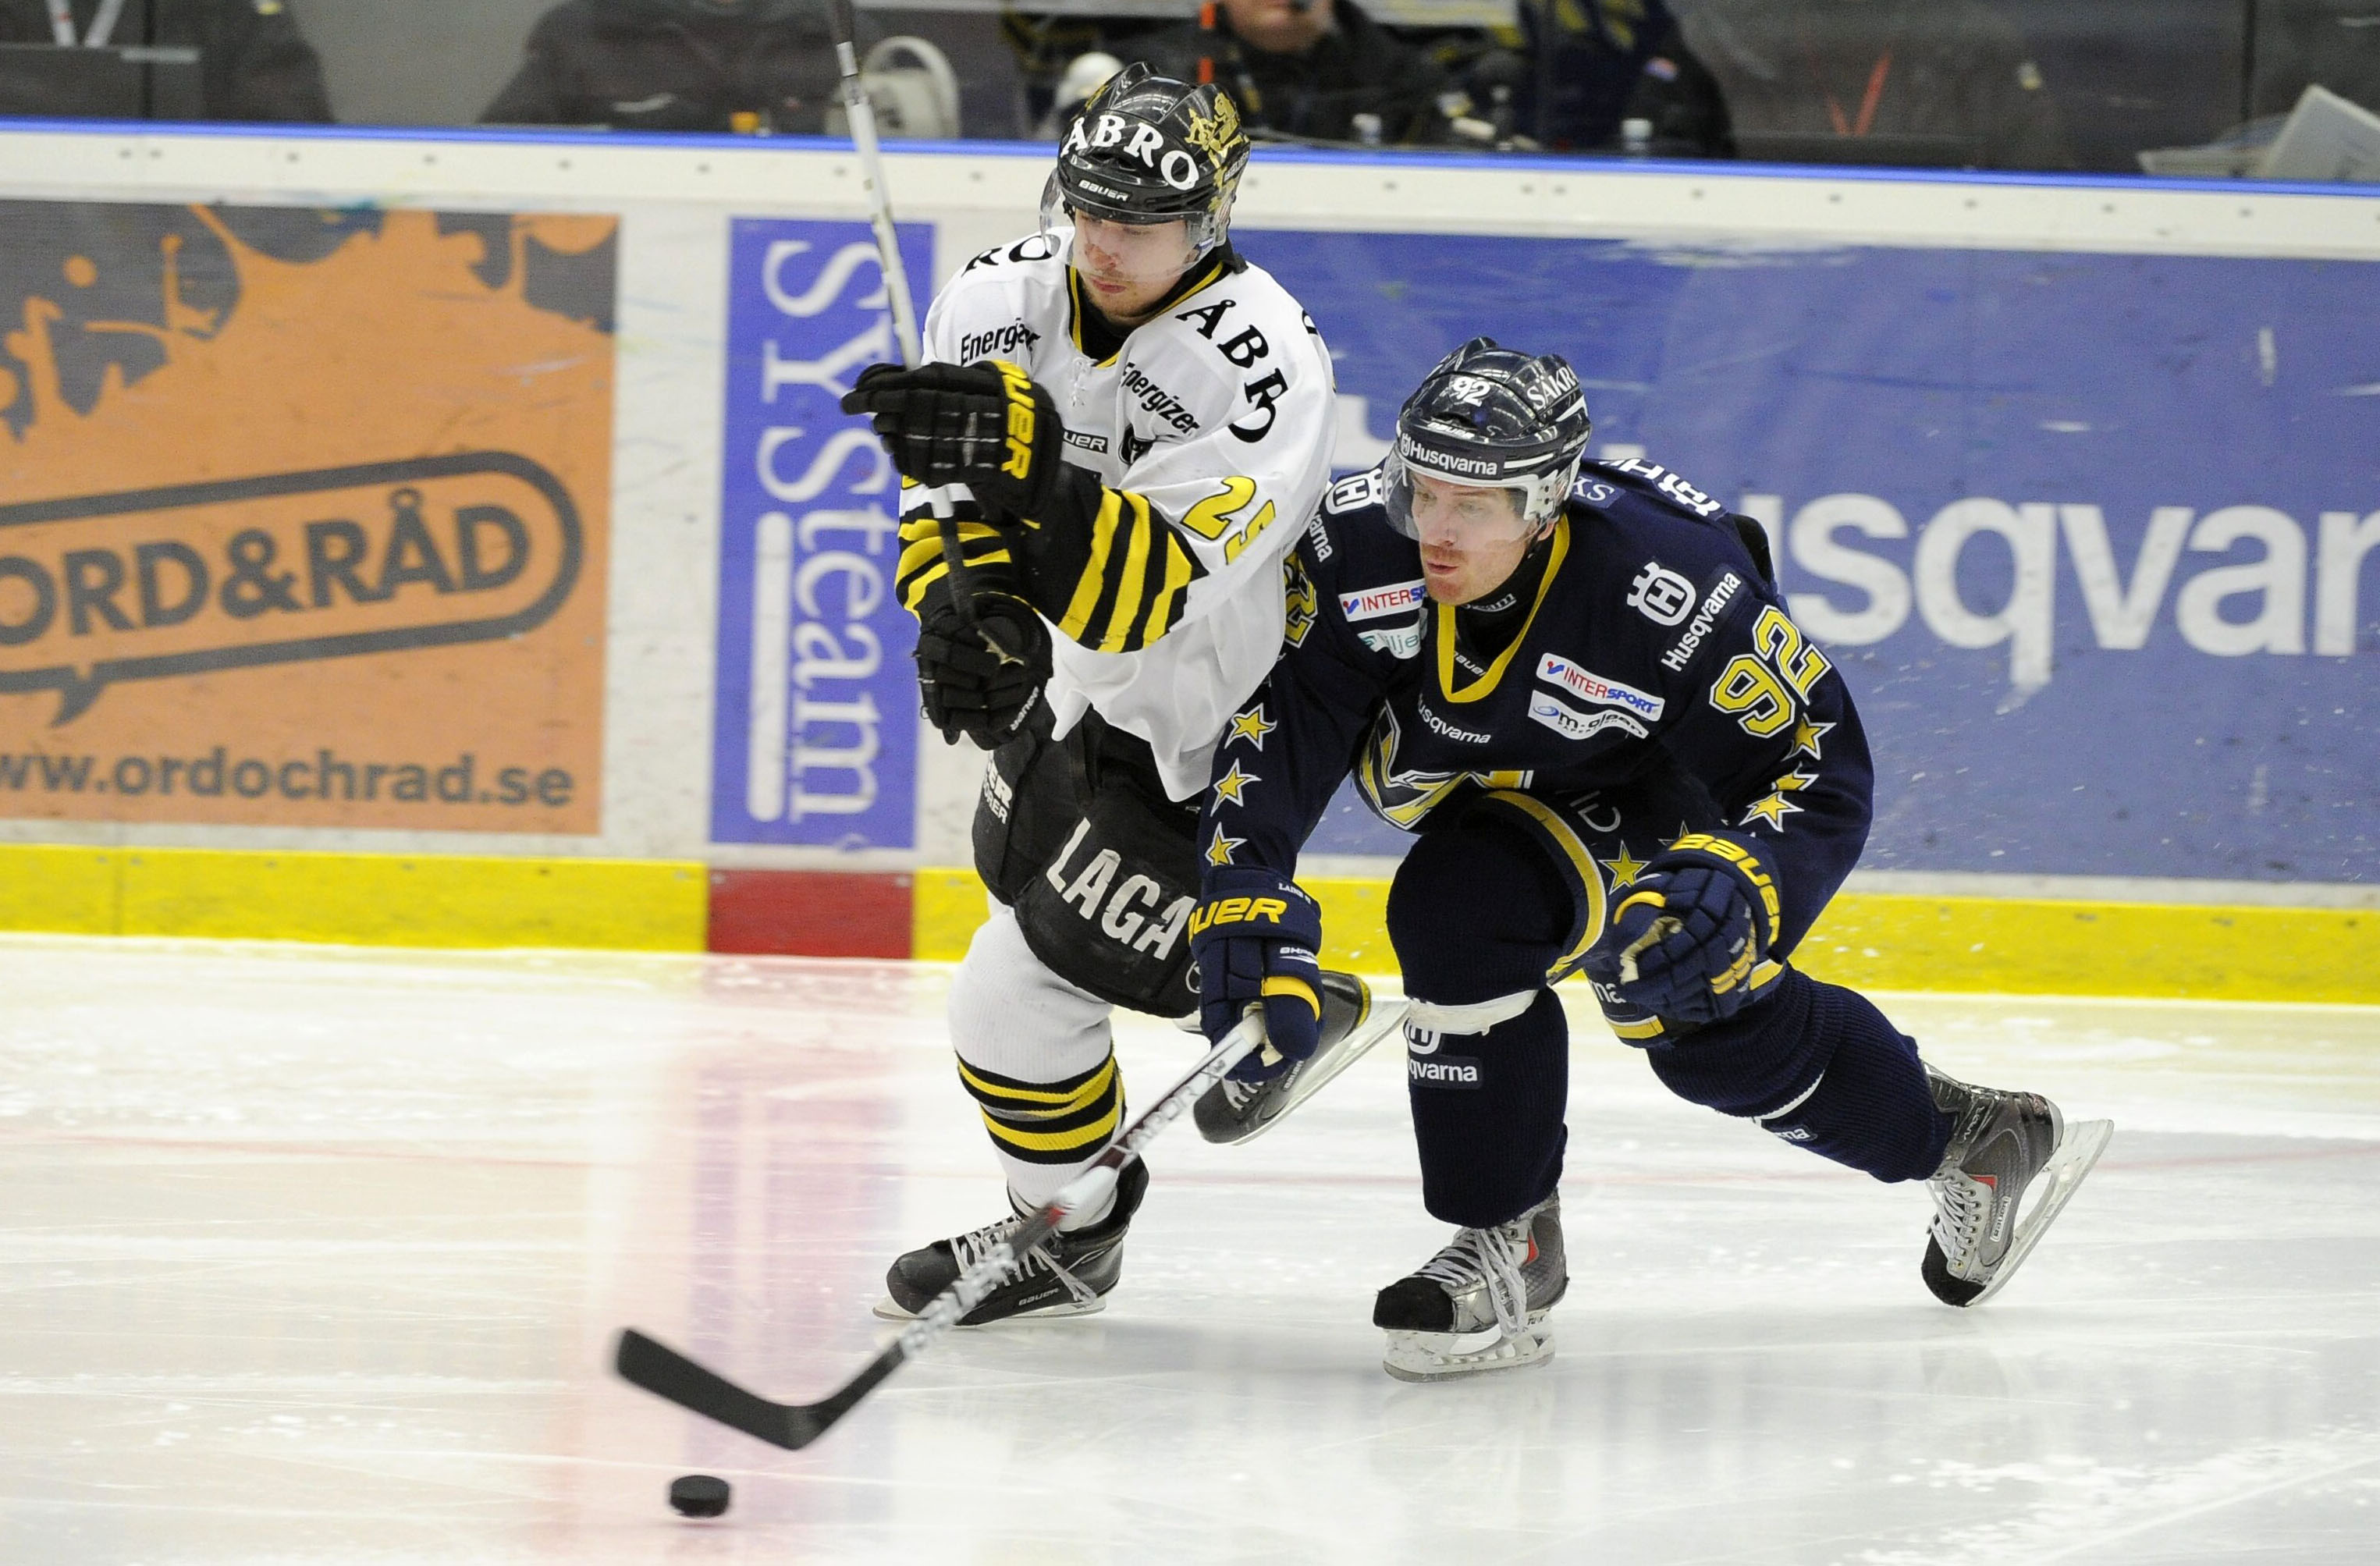 Det återstår att se om HV71 kan hitta tillbaka till sitt vägvinnande spel eller om AIK kan fortsätta käka upp de stora stjärnorna?